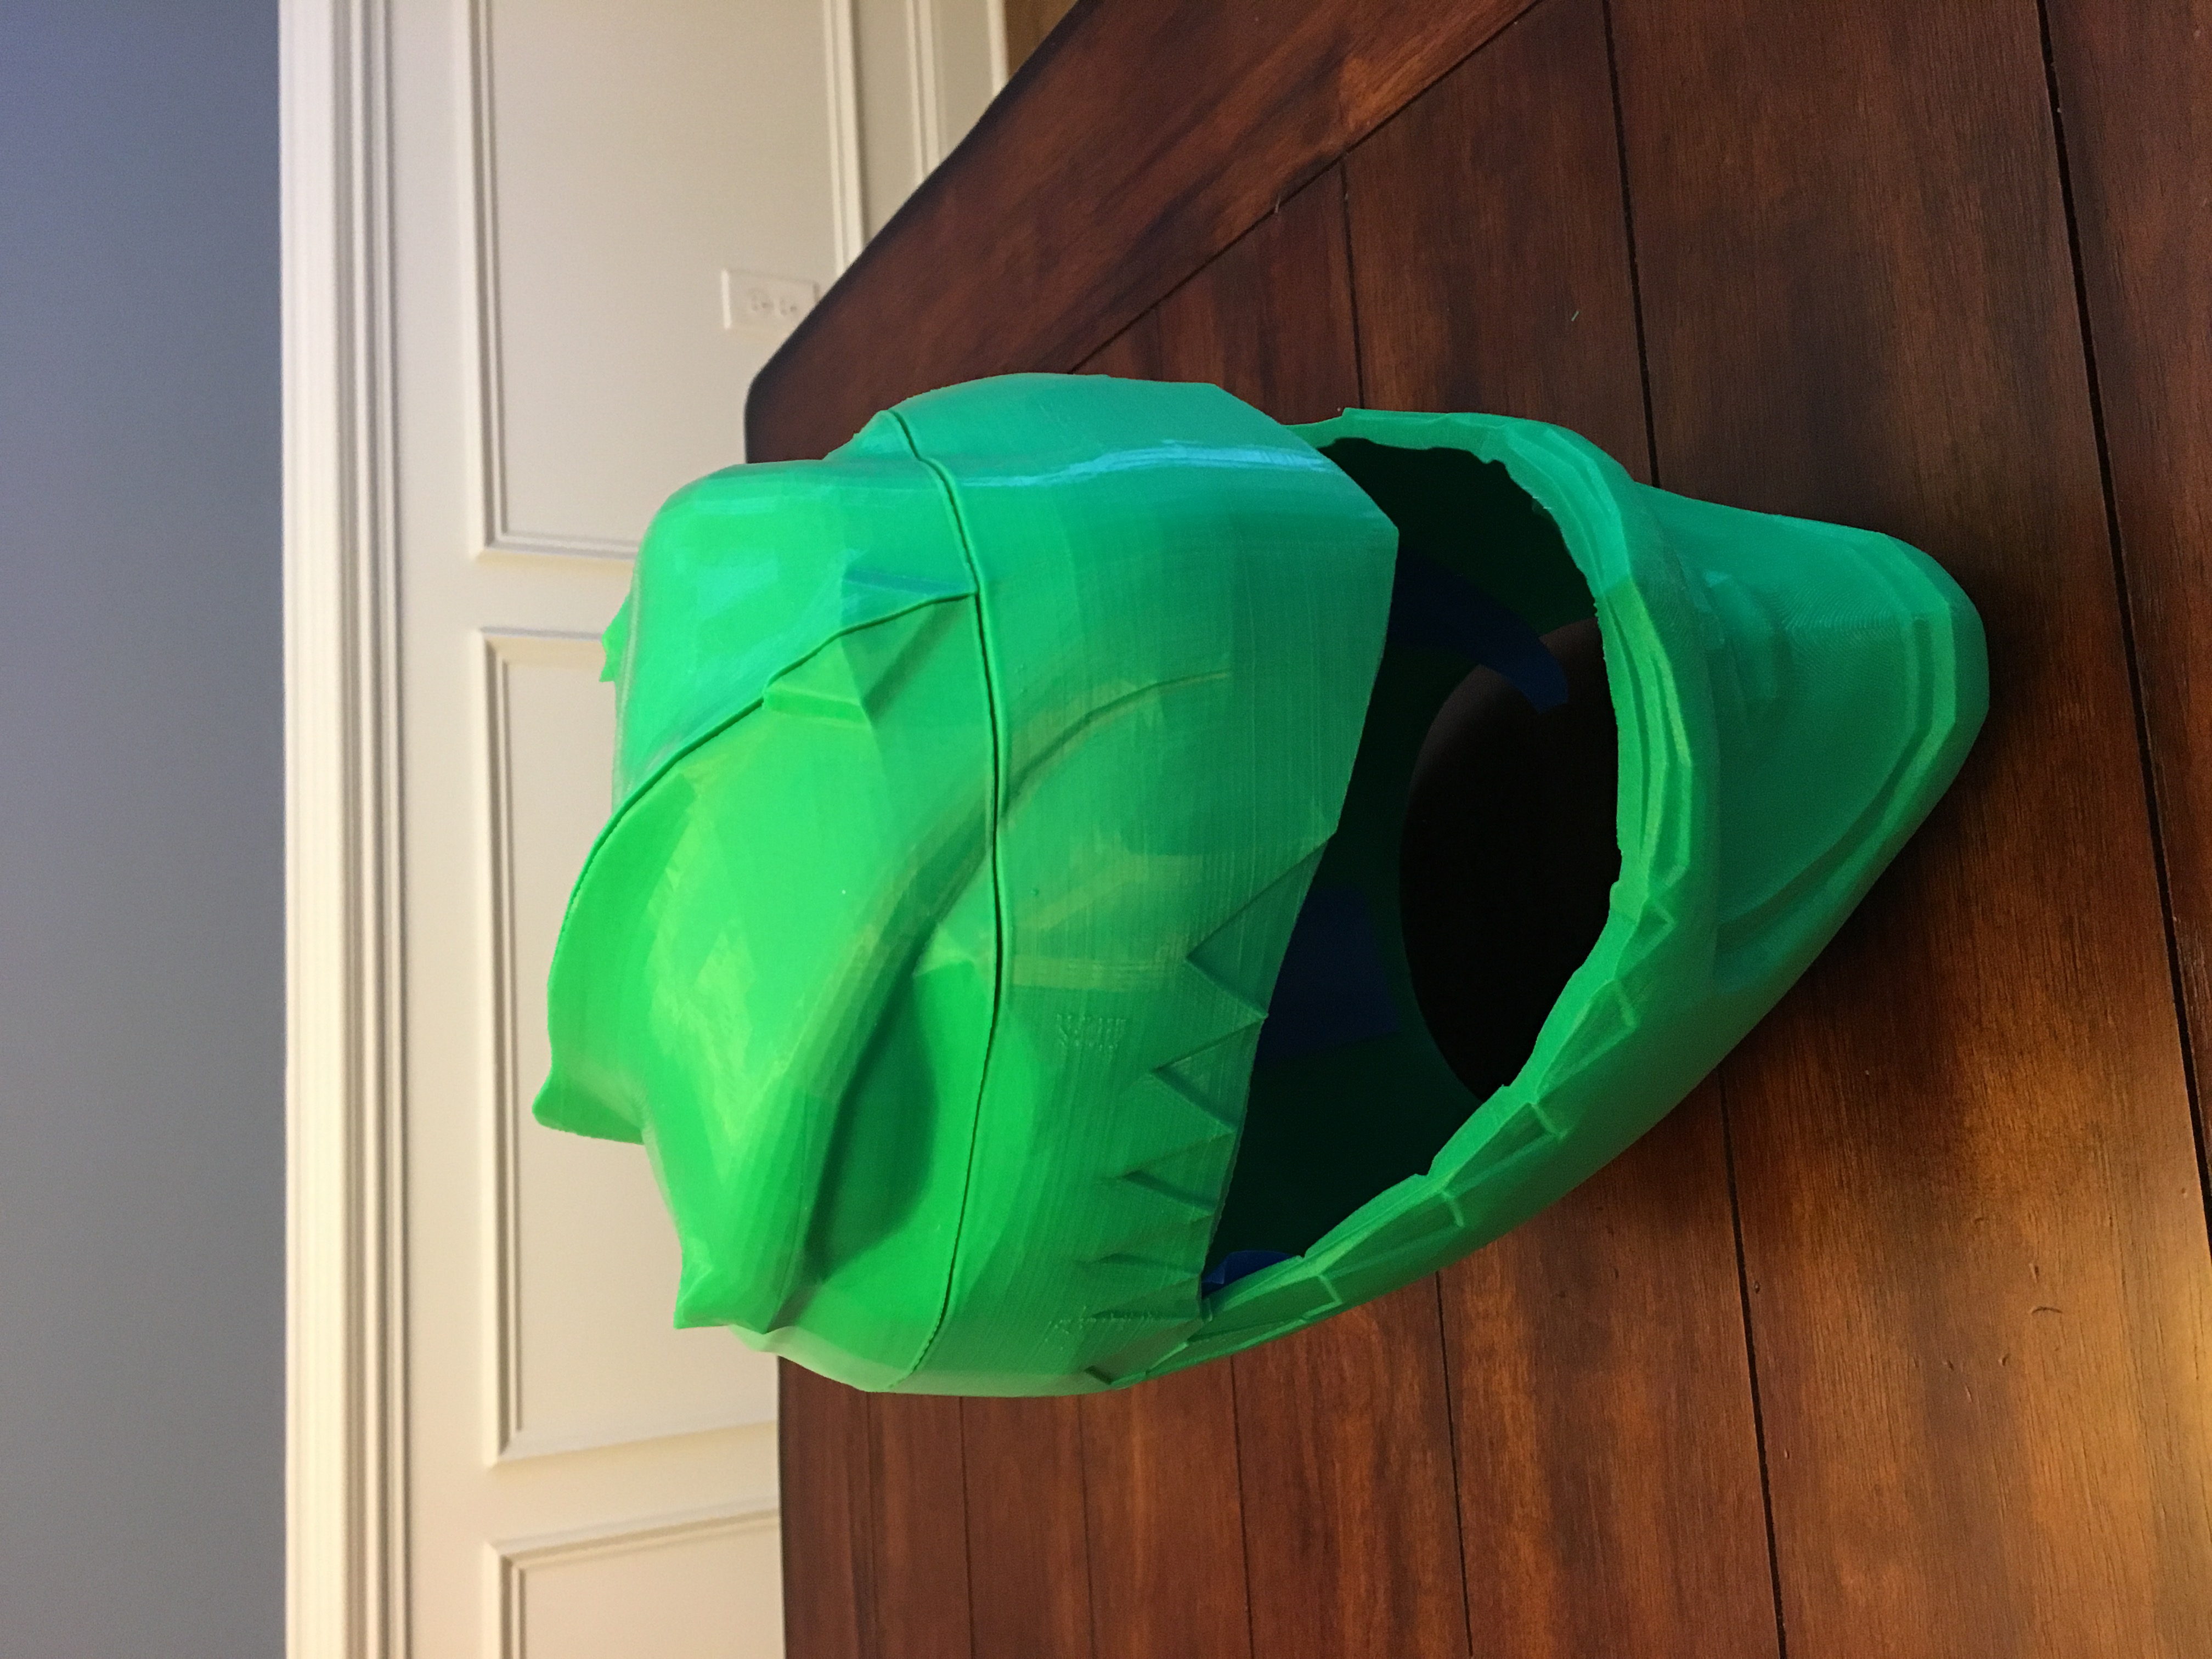 Green Ranger Helmet